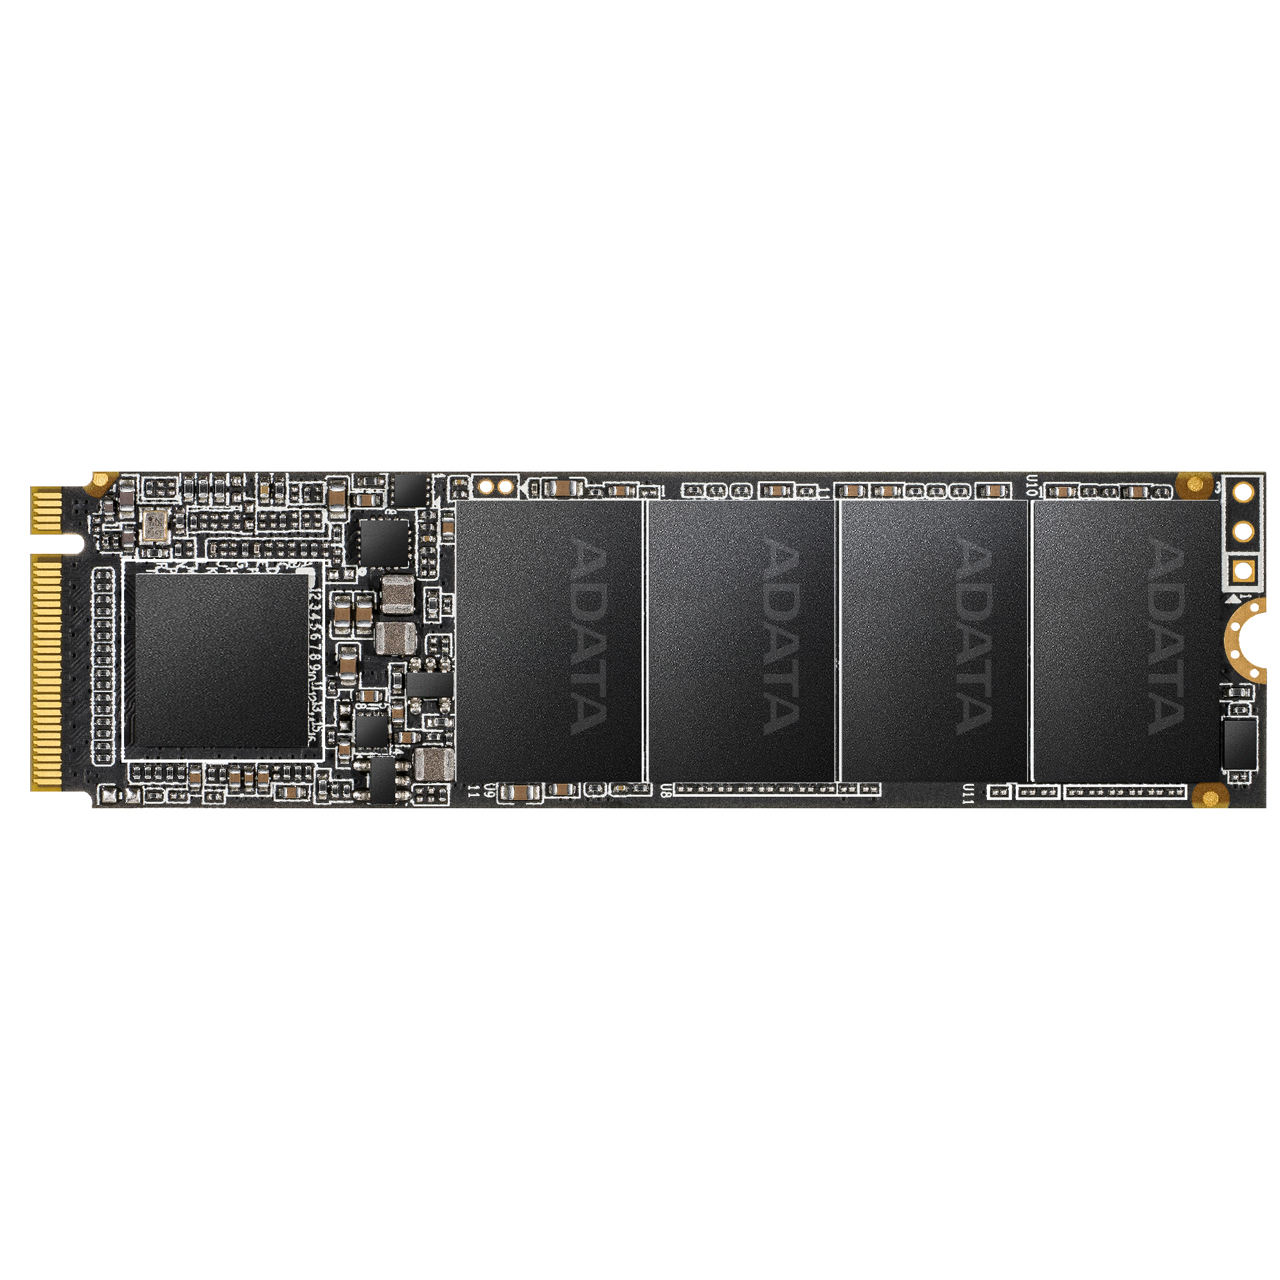 نقد و بررسی اس اس دی اینترنال ایکس پی جی مدل SX6000 Pro PCIe Gen3x4 M.2 2280 ظرفیت 256 گیگابایت توسط خریداران